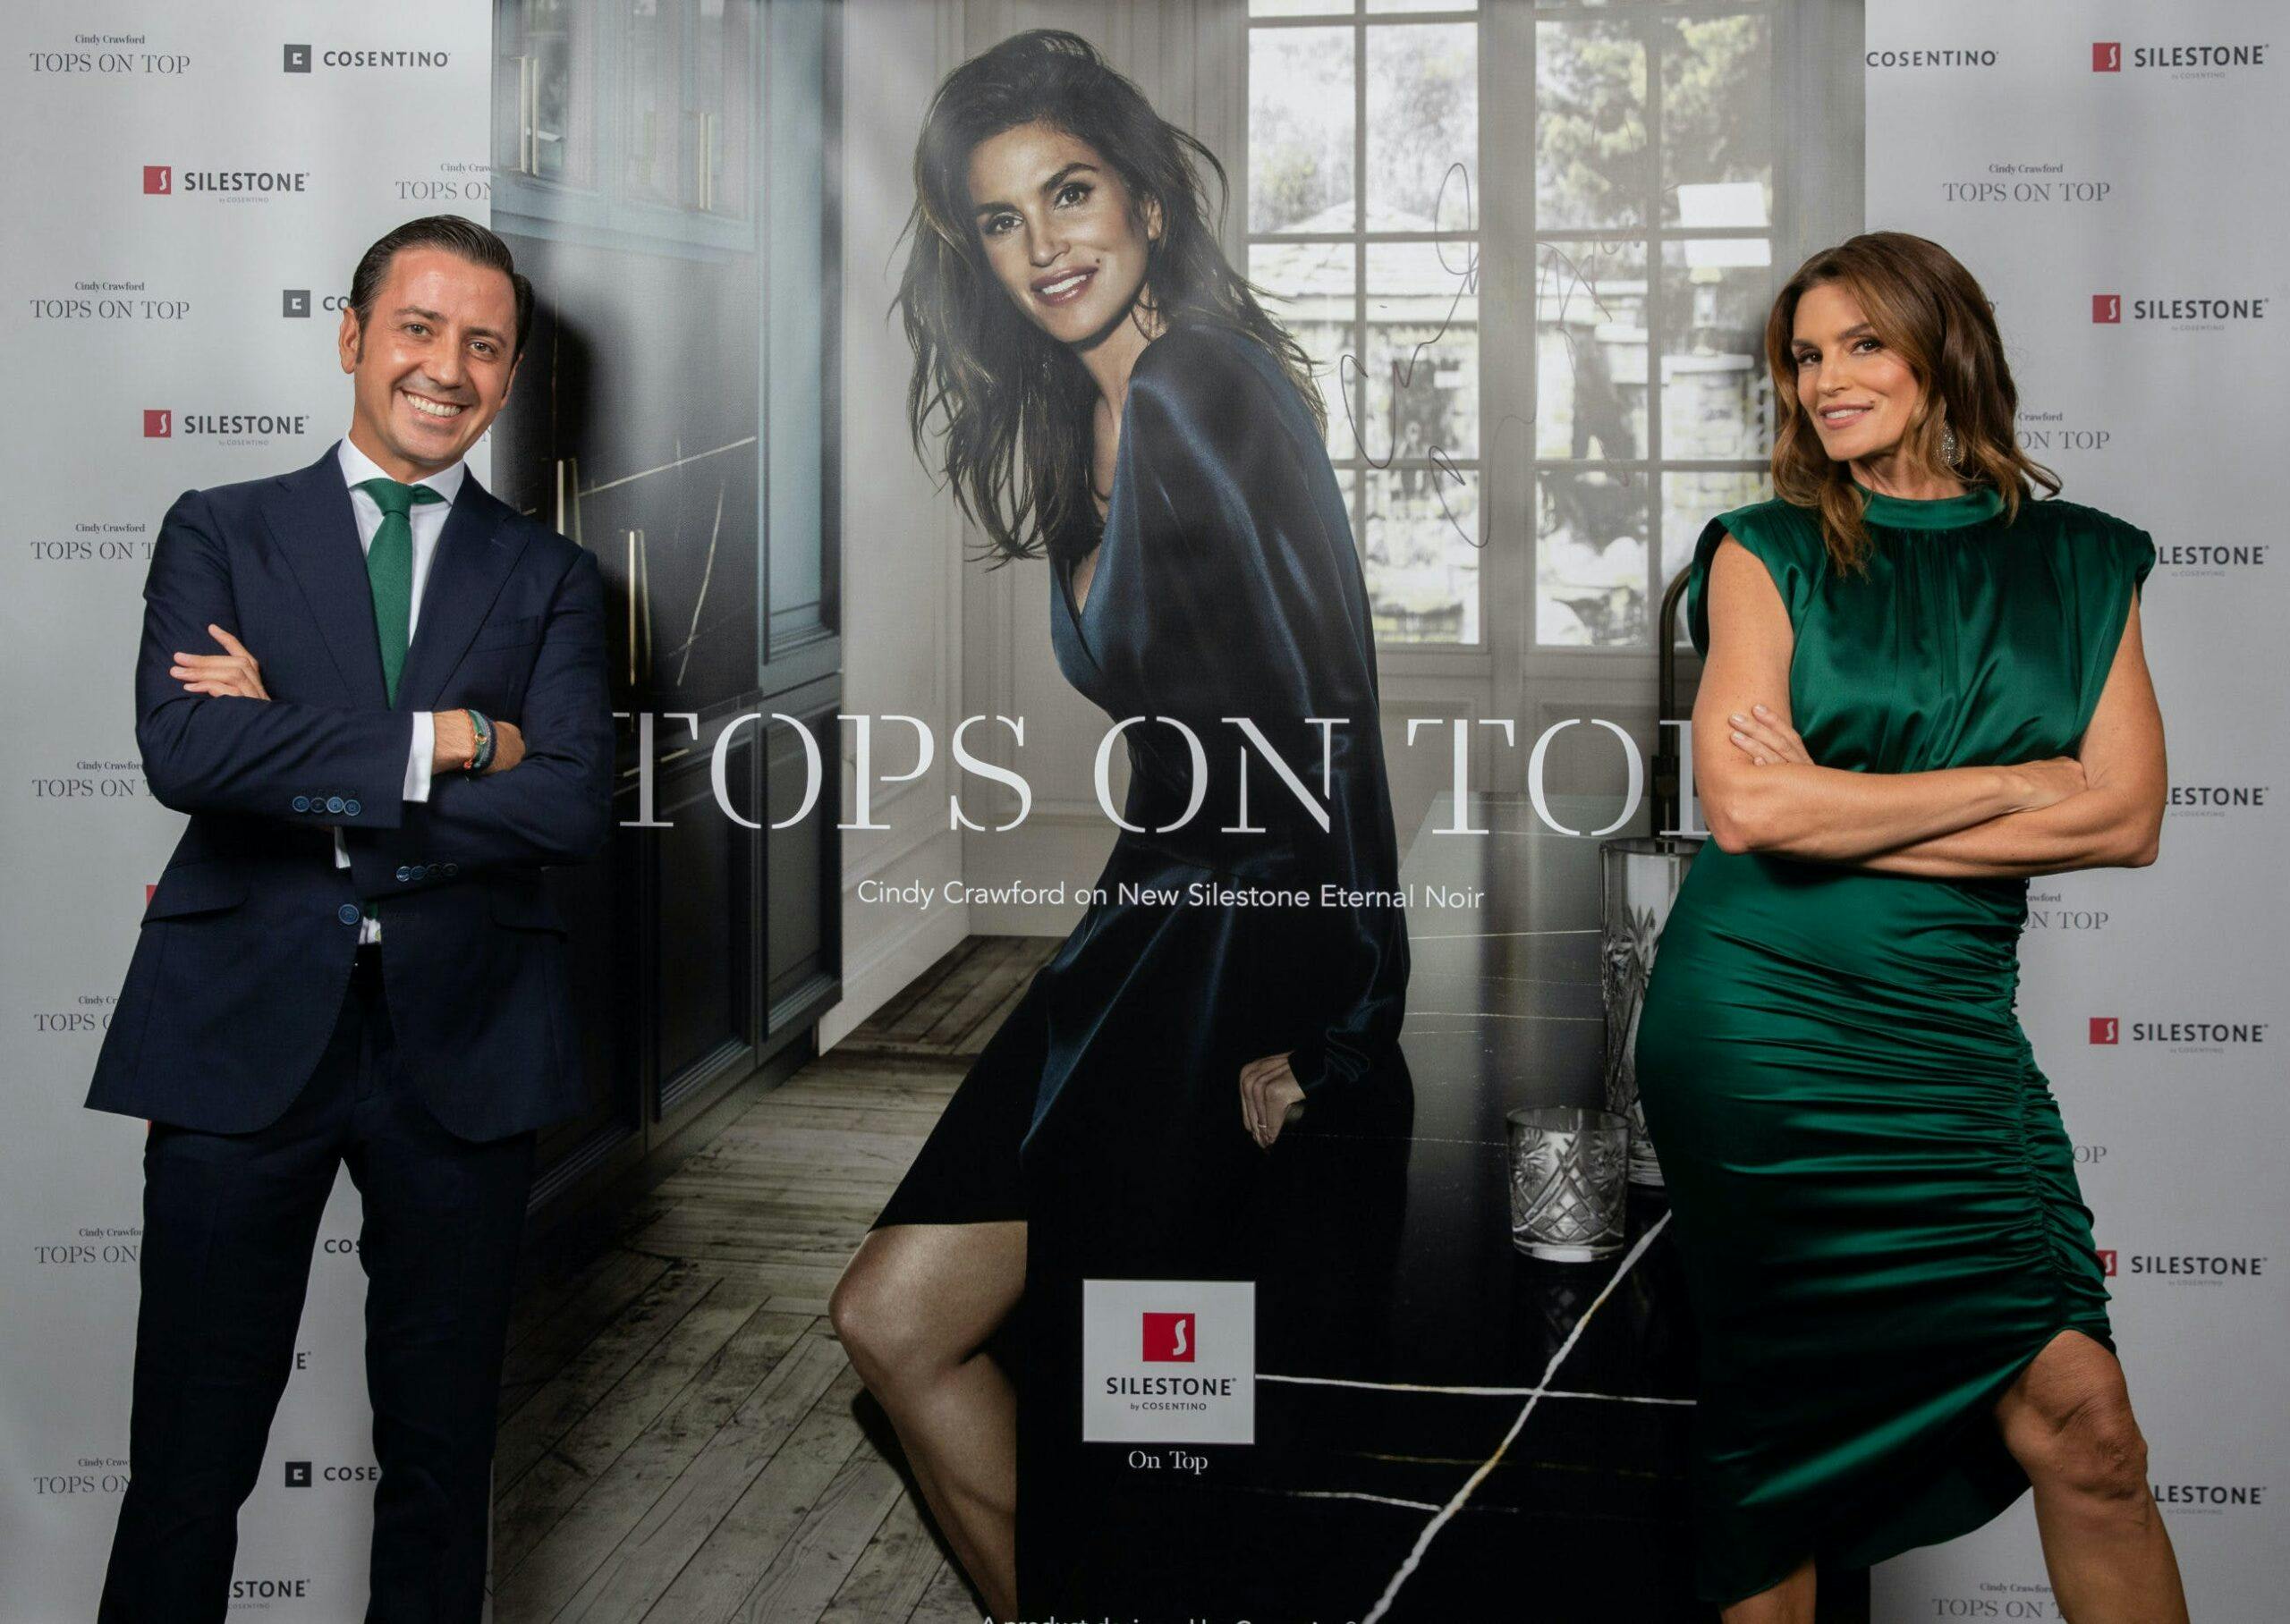 Imagen número 75 de Silestone® presenta su nueva campaña con Cindy Crawford, “Tops on Top 2019”